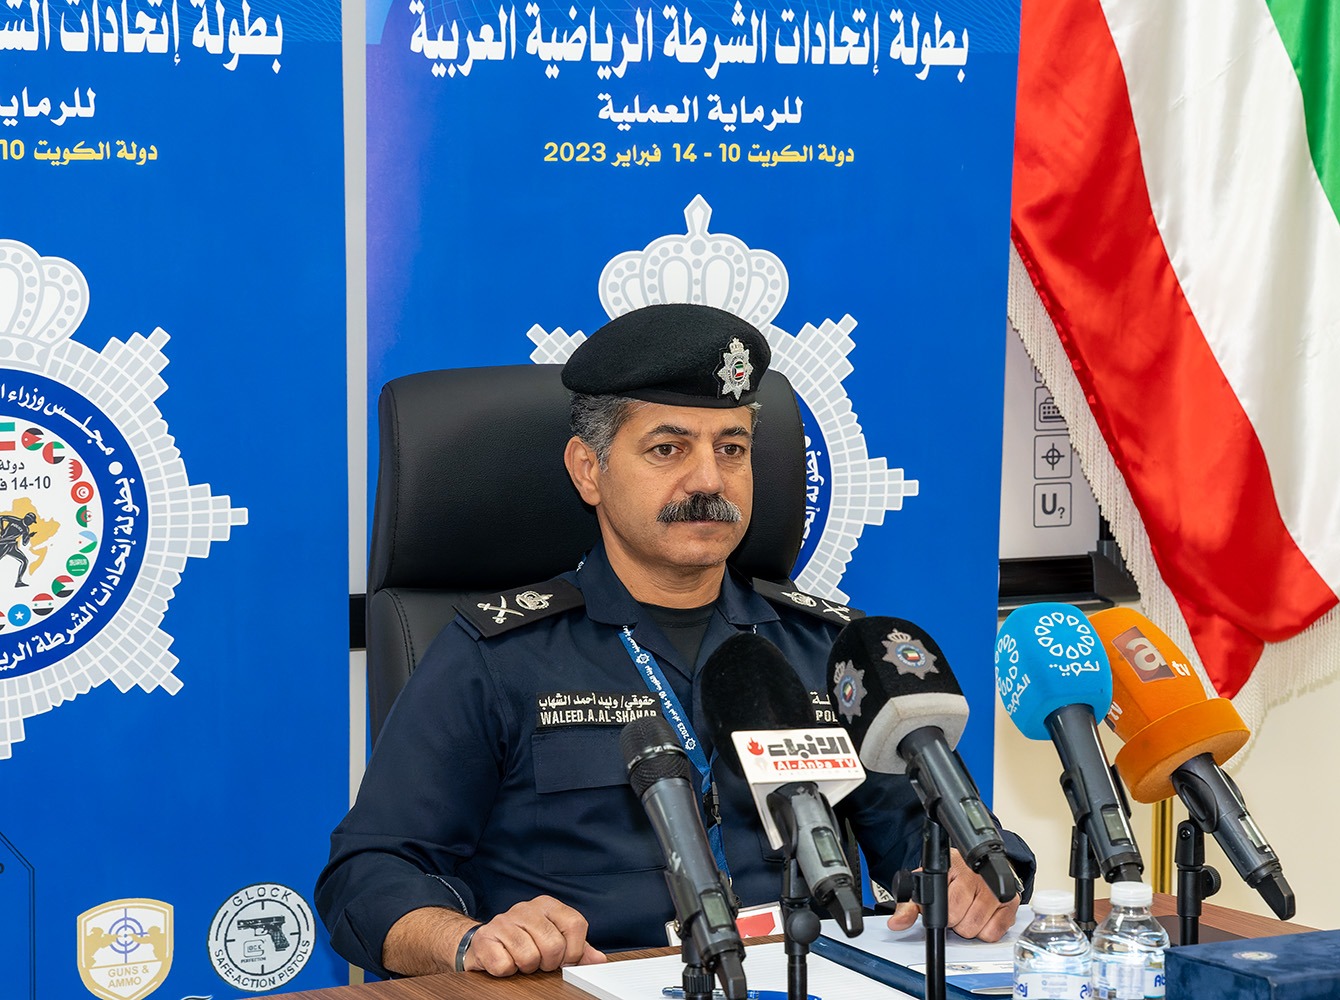 رئيس اتحاد الشرطة الرياضي الكويتي اللواء حقوقي وليد الشهاب